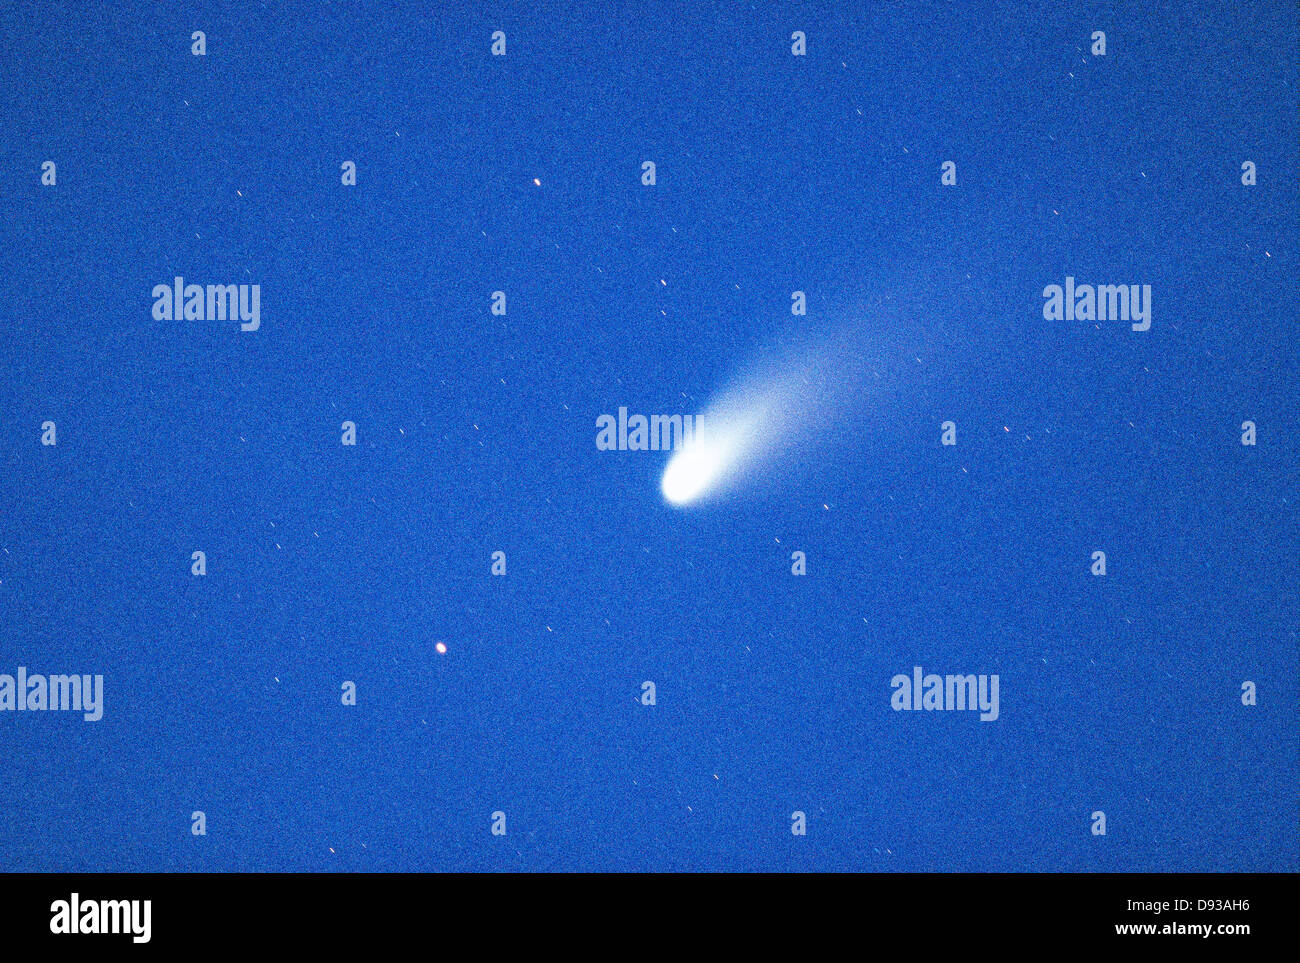 The Comet Hale-Bopp. Stock Photo